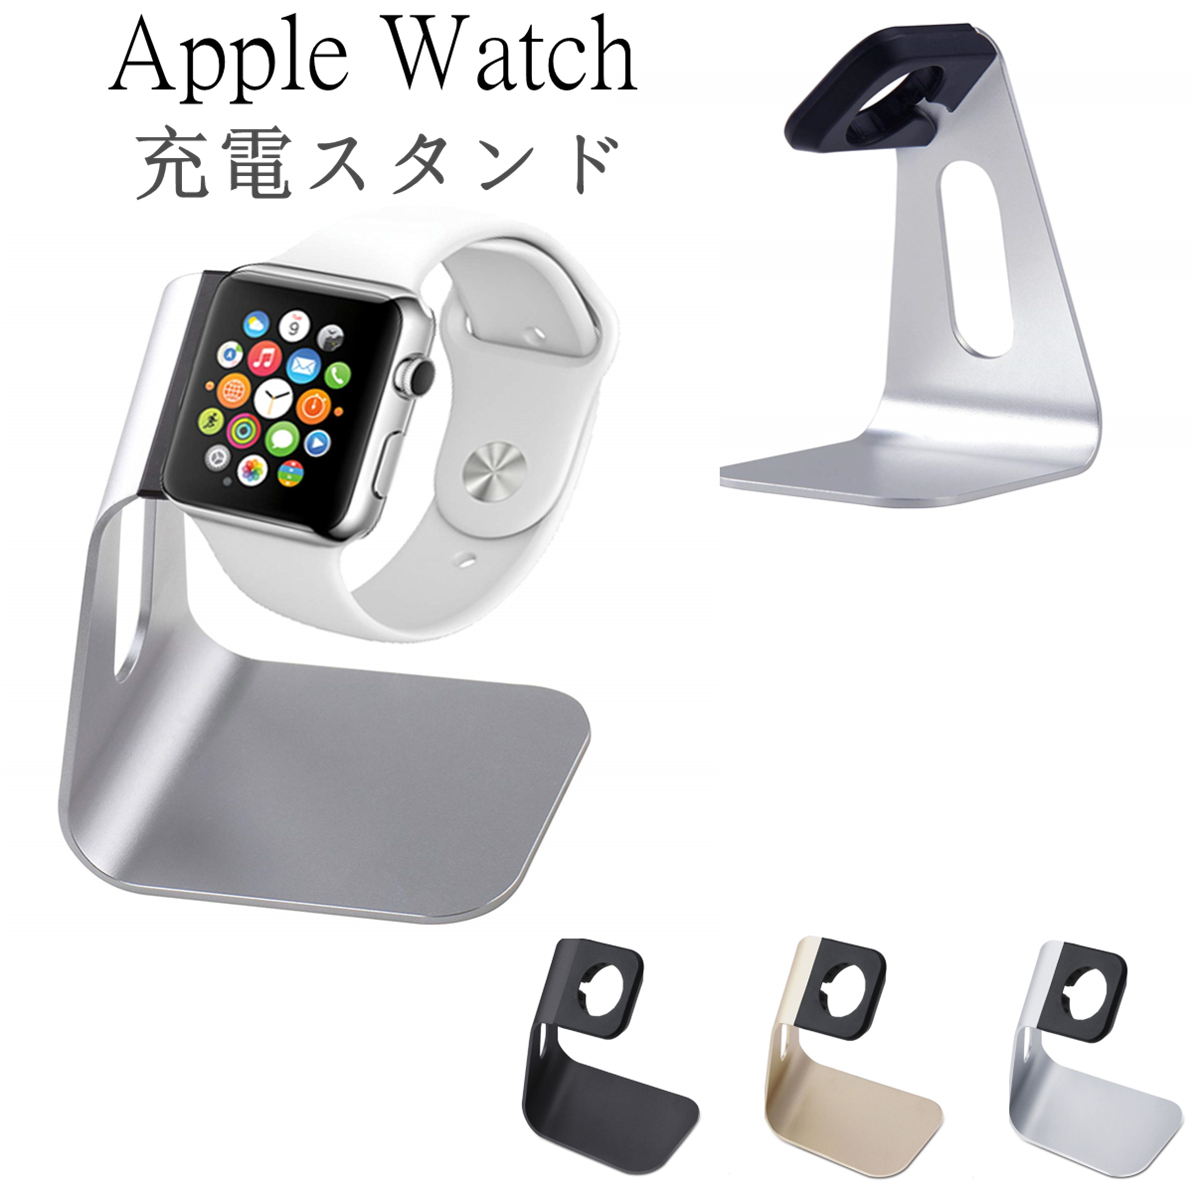 楽天市場 アップルウォッチ 充電 スタンド Apple Watch ホルダー